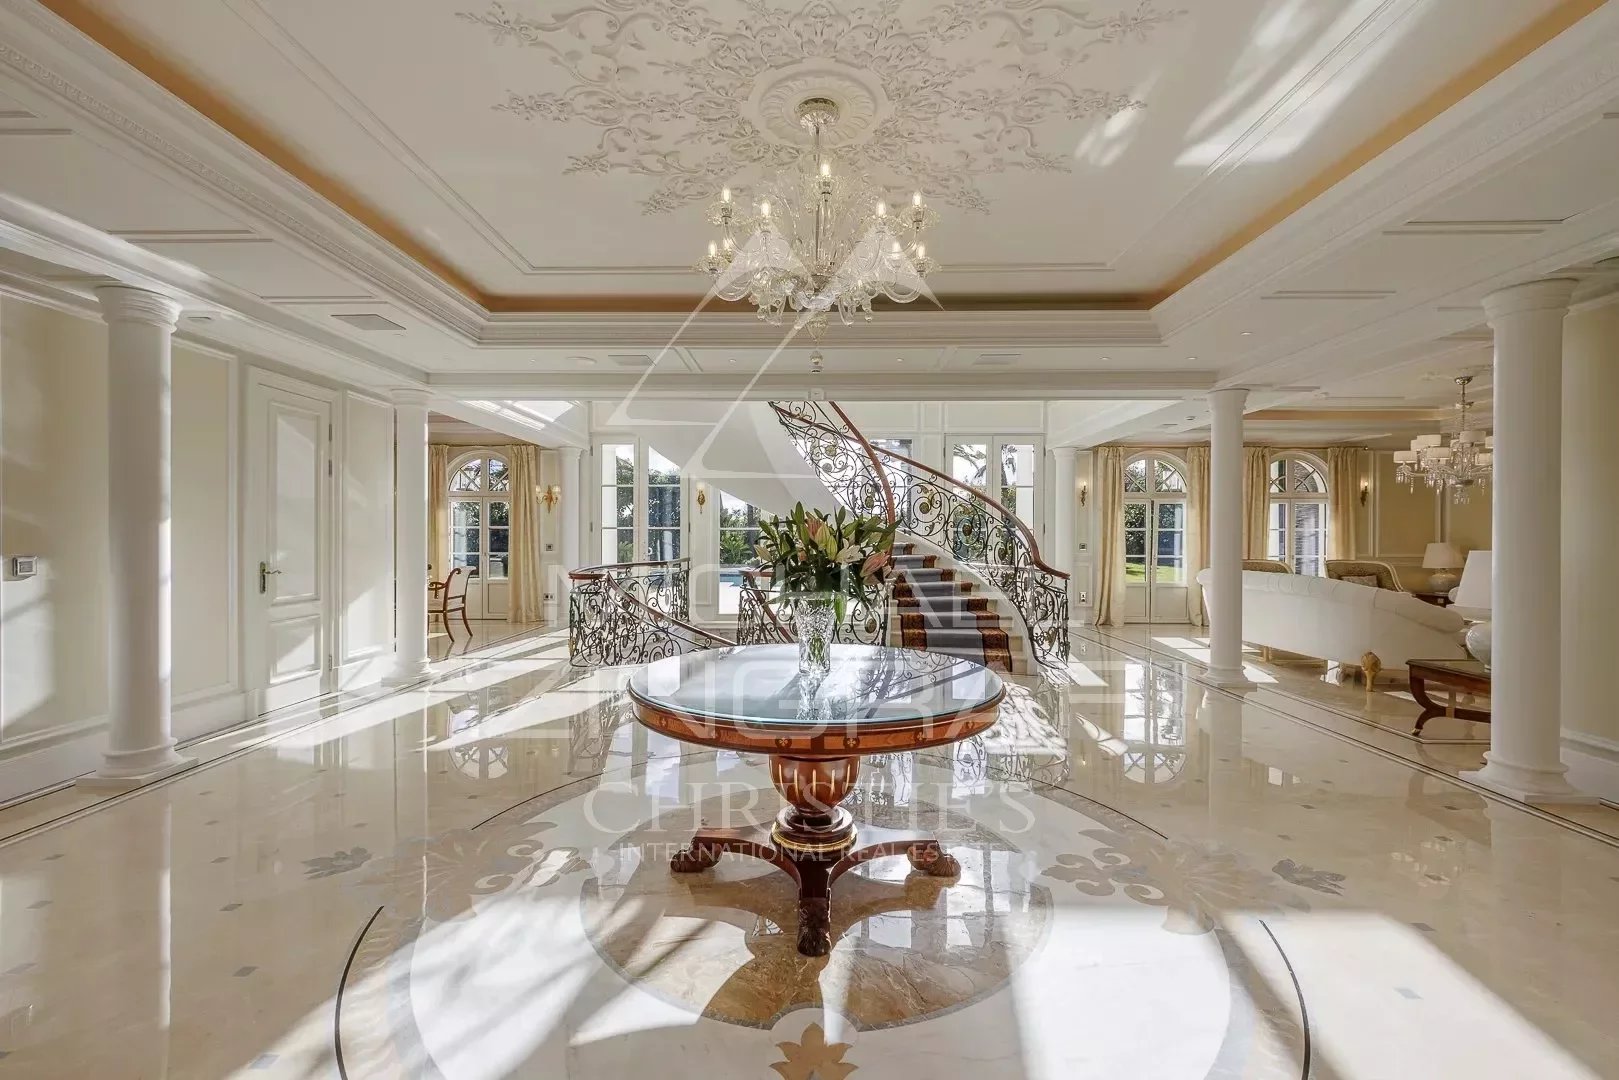 Super-Cannes - Majestätische neue Florentiner Villa mit Blick auf das Meer